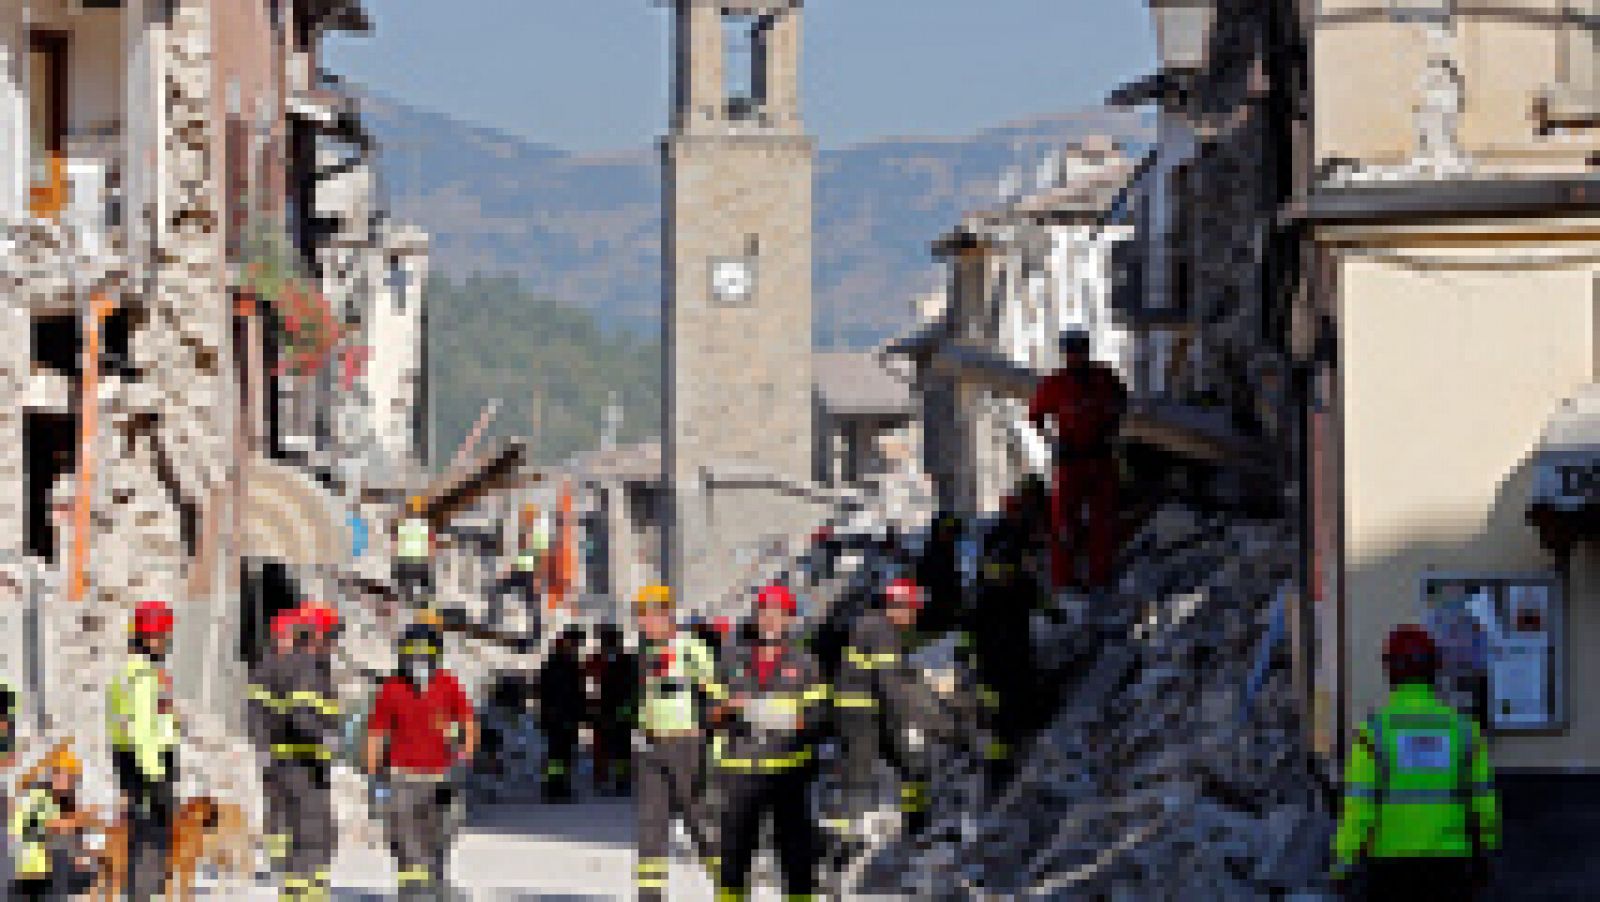 Continúan las tareas de búsqueda y desescombro en Amatrice tras el terremoto entre réplicas